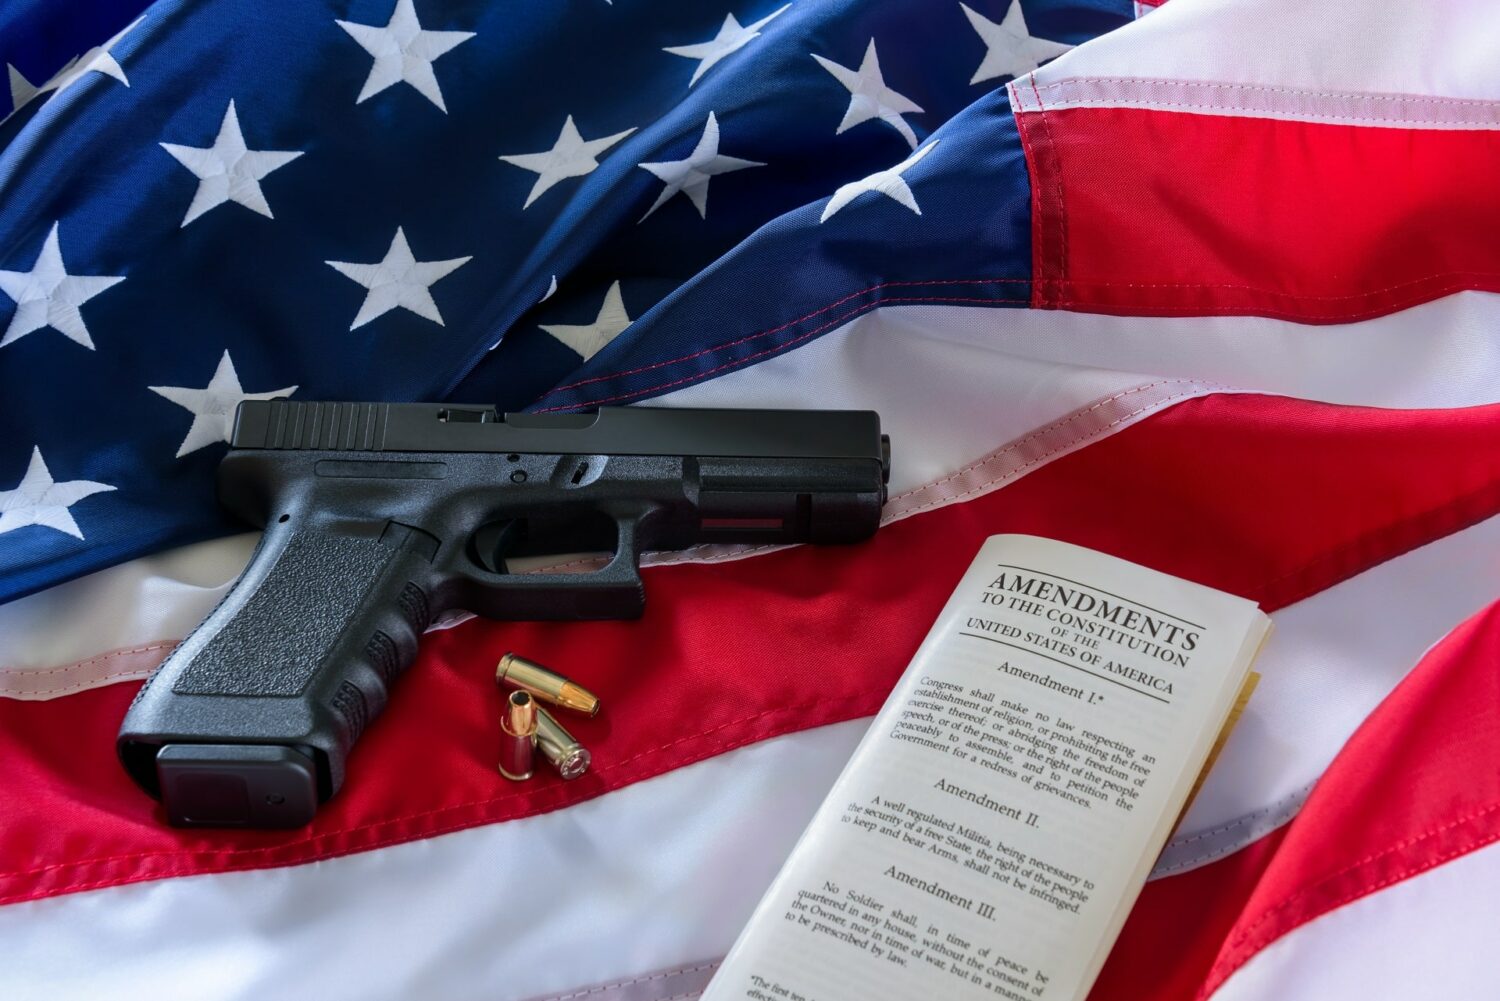 Στο Τέξας εγκρίθηκε η δημόσια οπλοφορία χωρίς άδεια